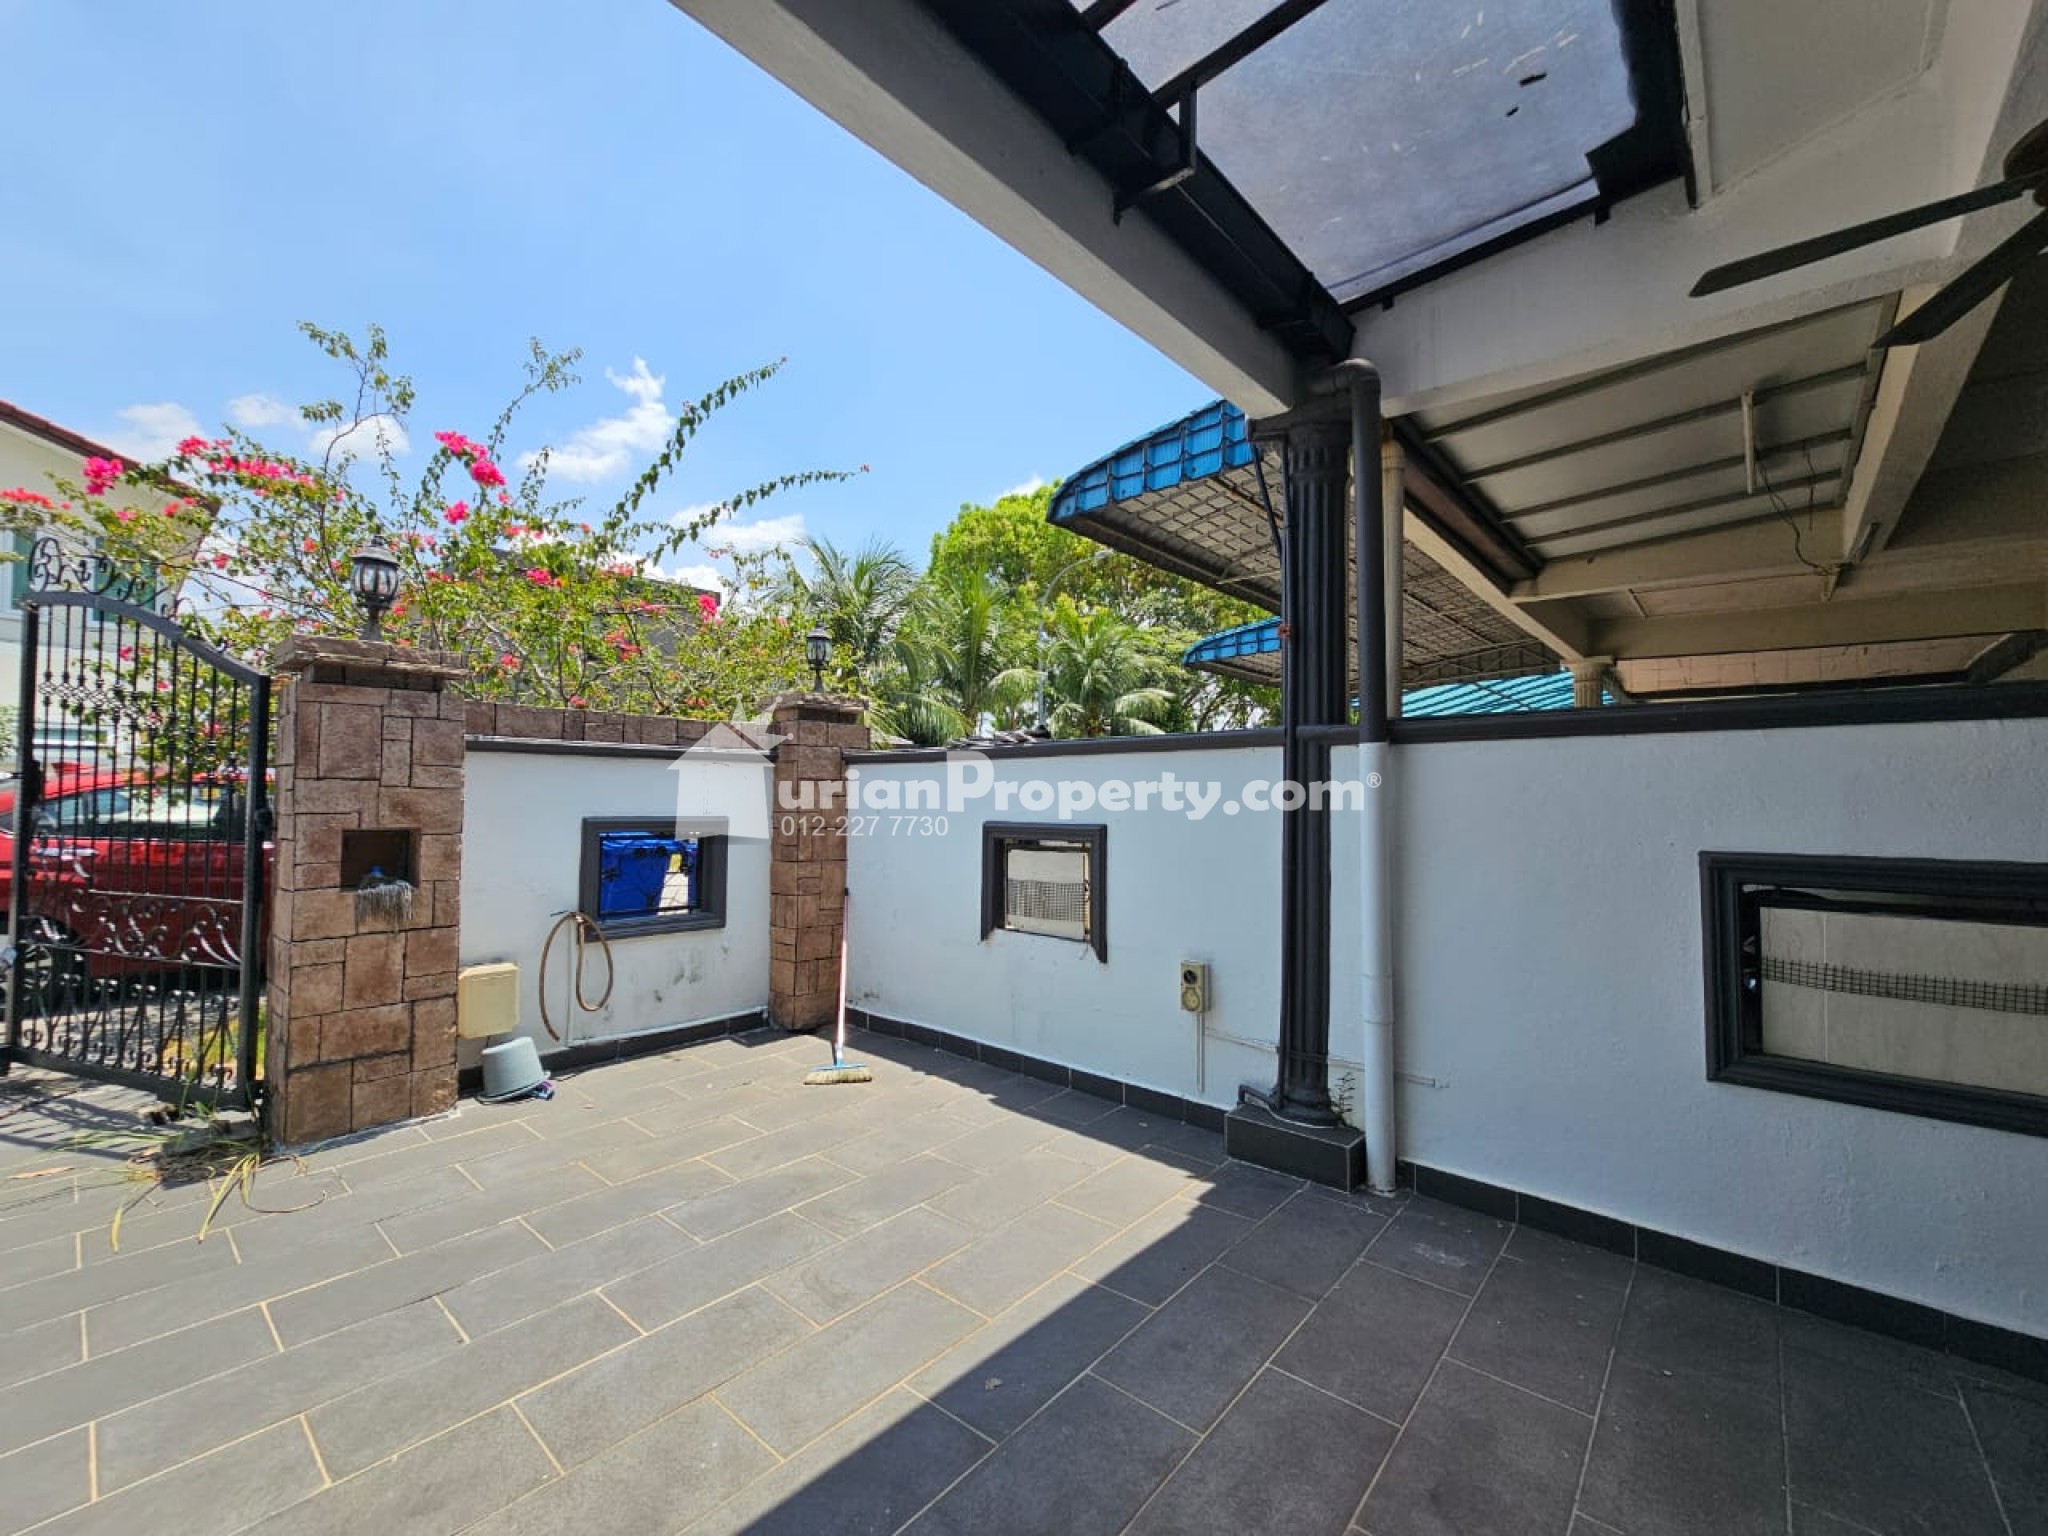 Terrace House For Sale at Kota Kemuning